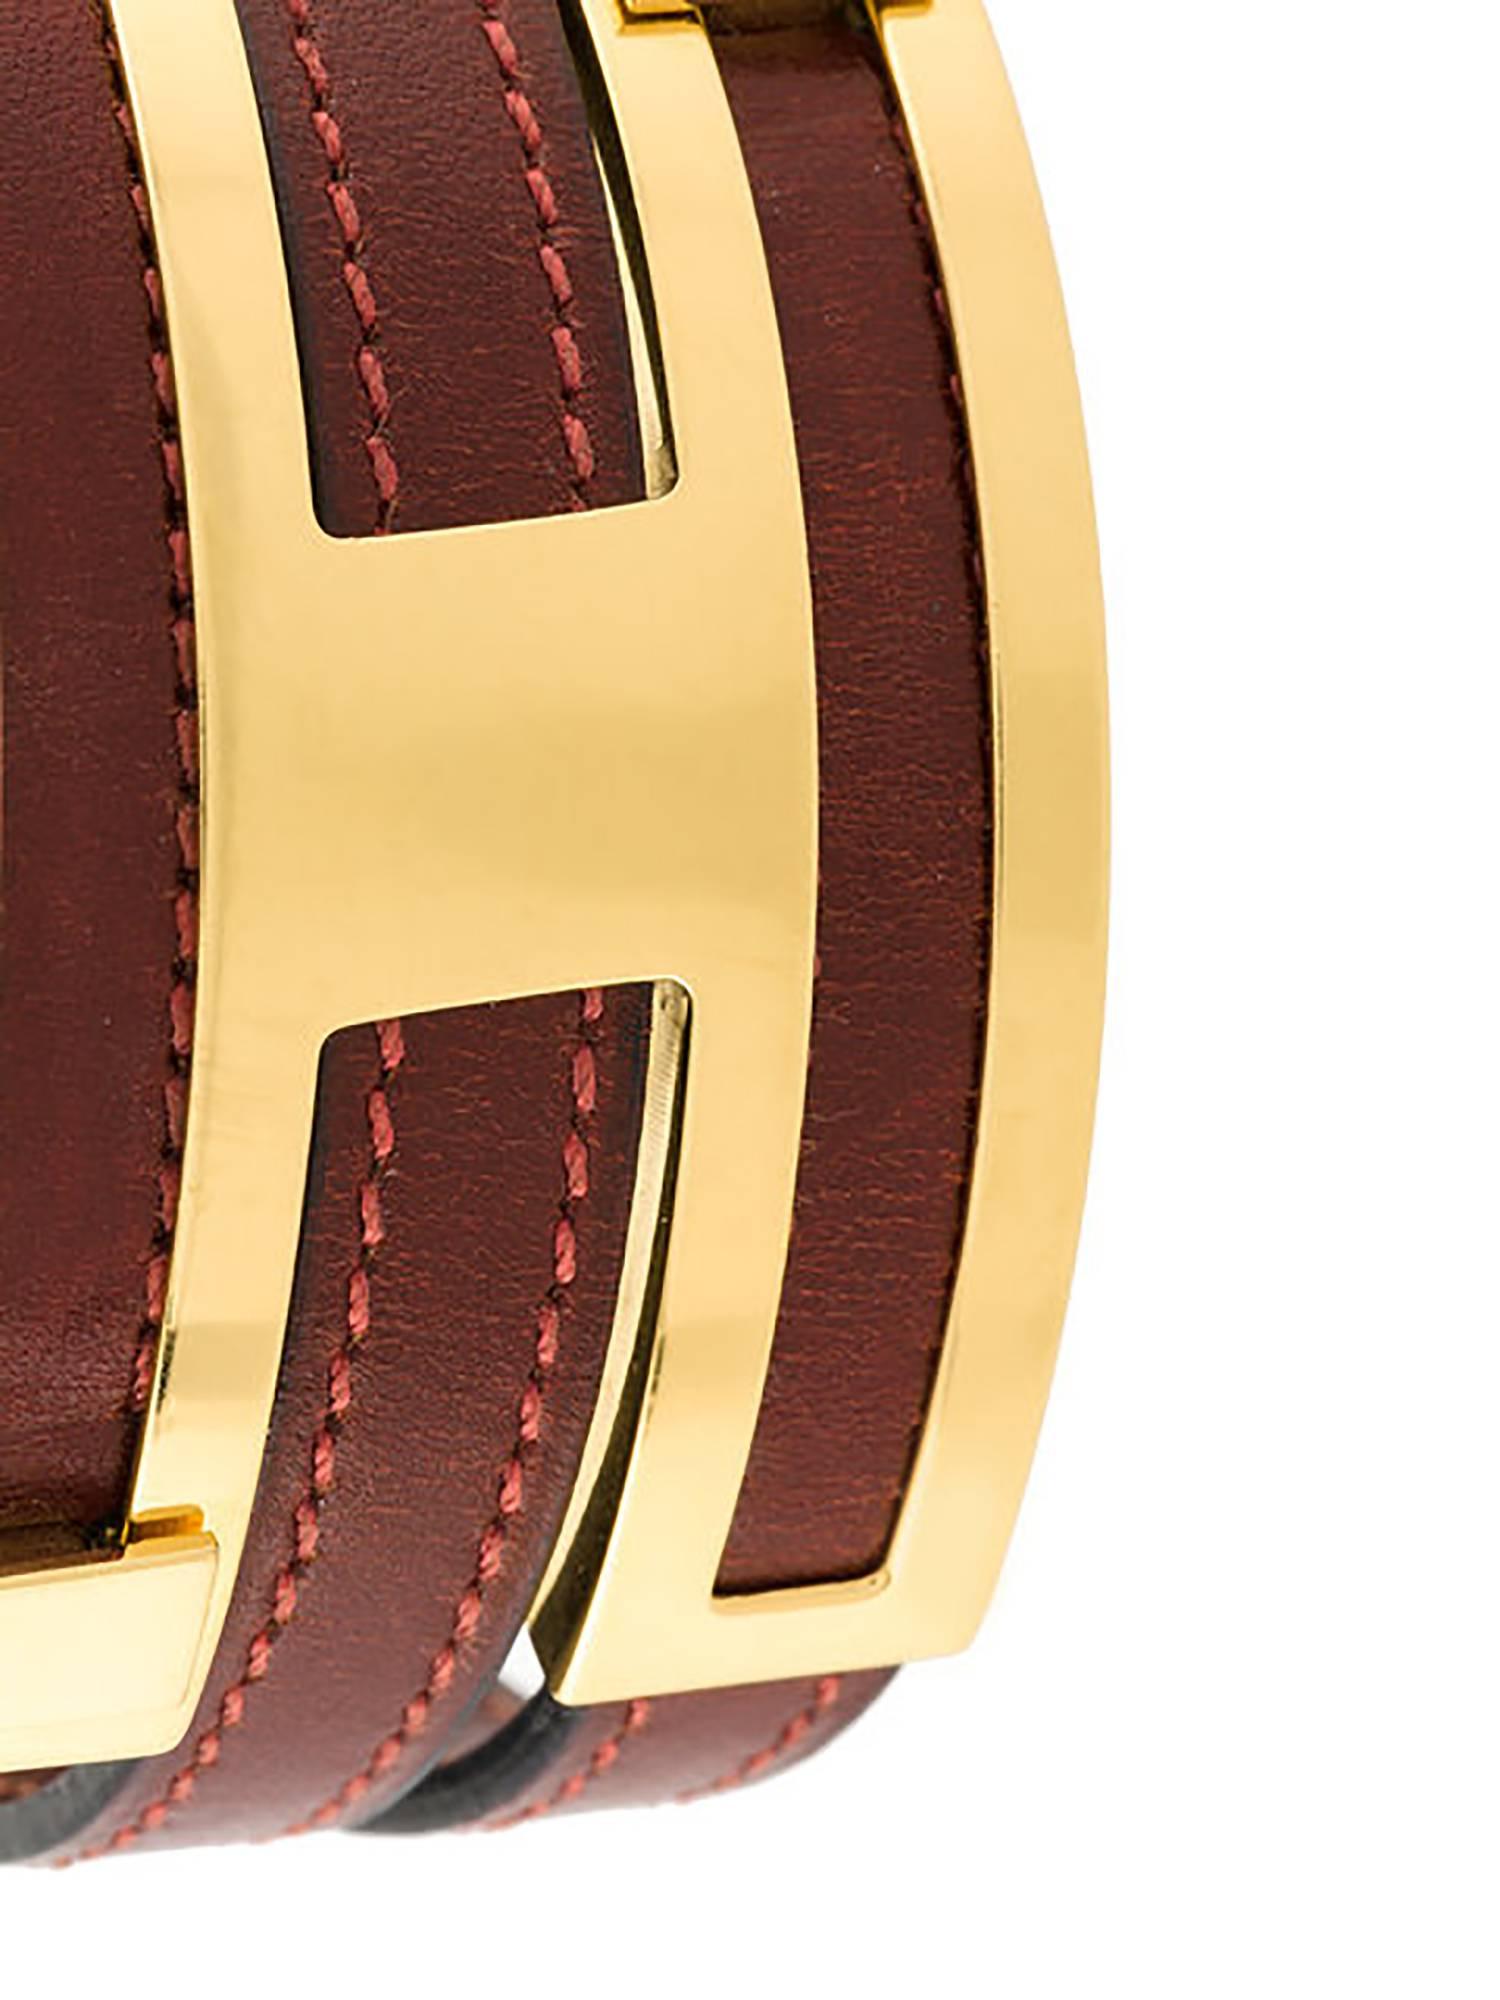 Les célèbres bracelets en cuir d'Hermès sont parfaits pour être empilés. Ce modèle particulier comporte un bracelet en cuir rouge foncé qui s'enroule dans un fermoir en forme de H. La largeur des bracelets est ajustée par une simple pression sur les